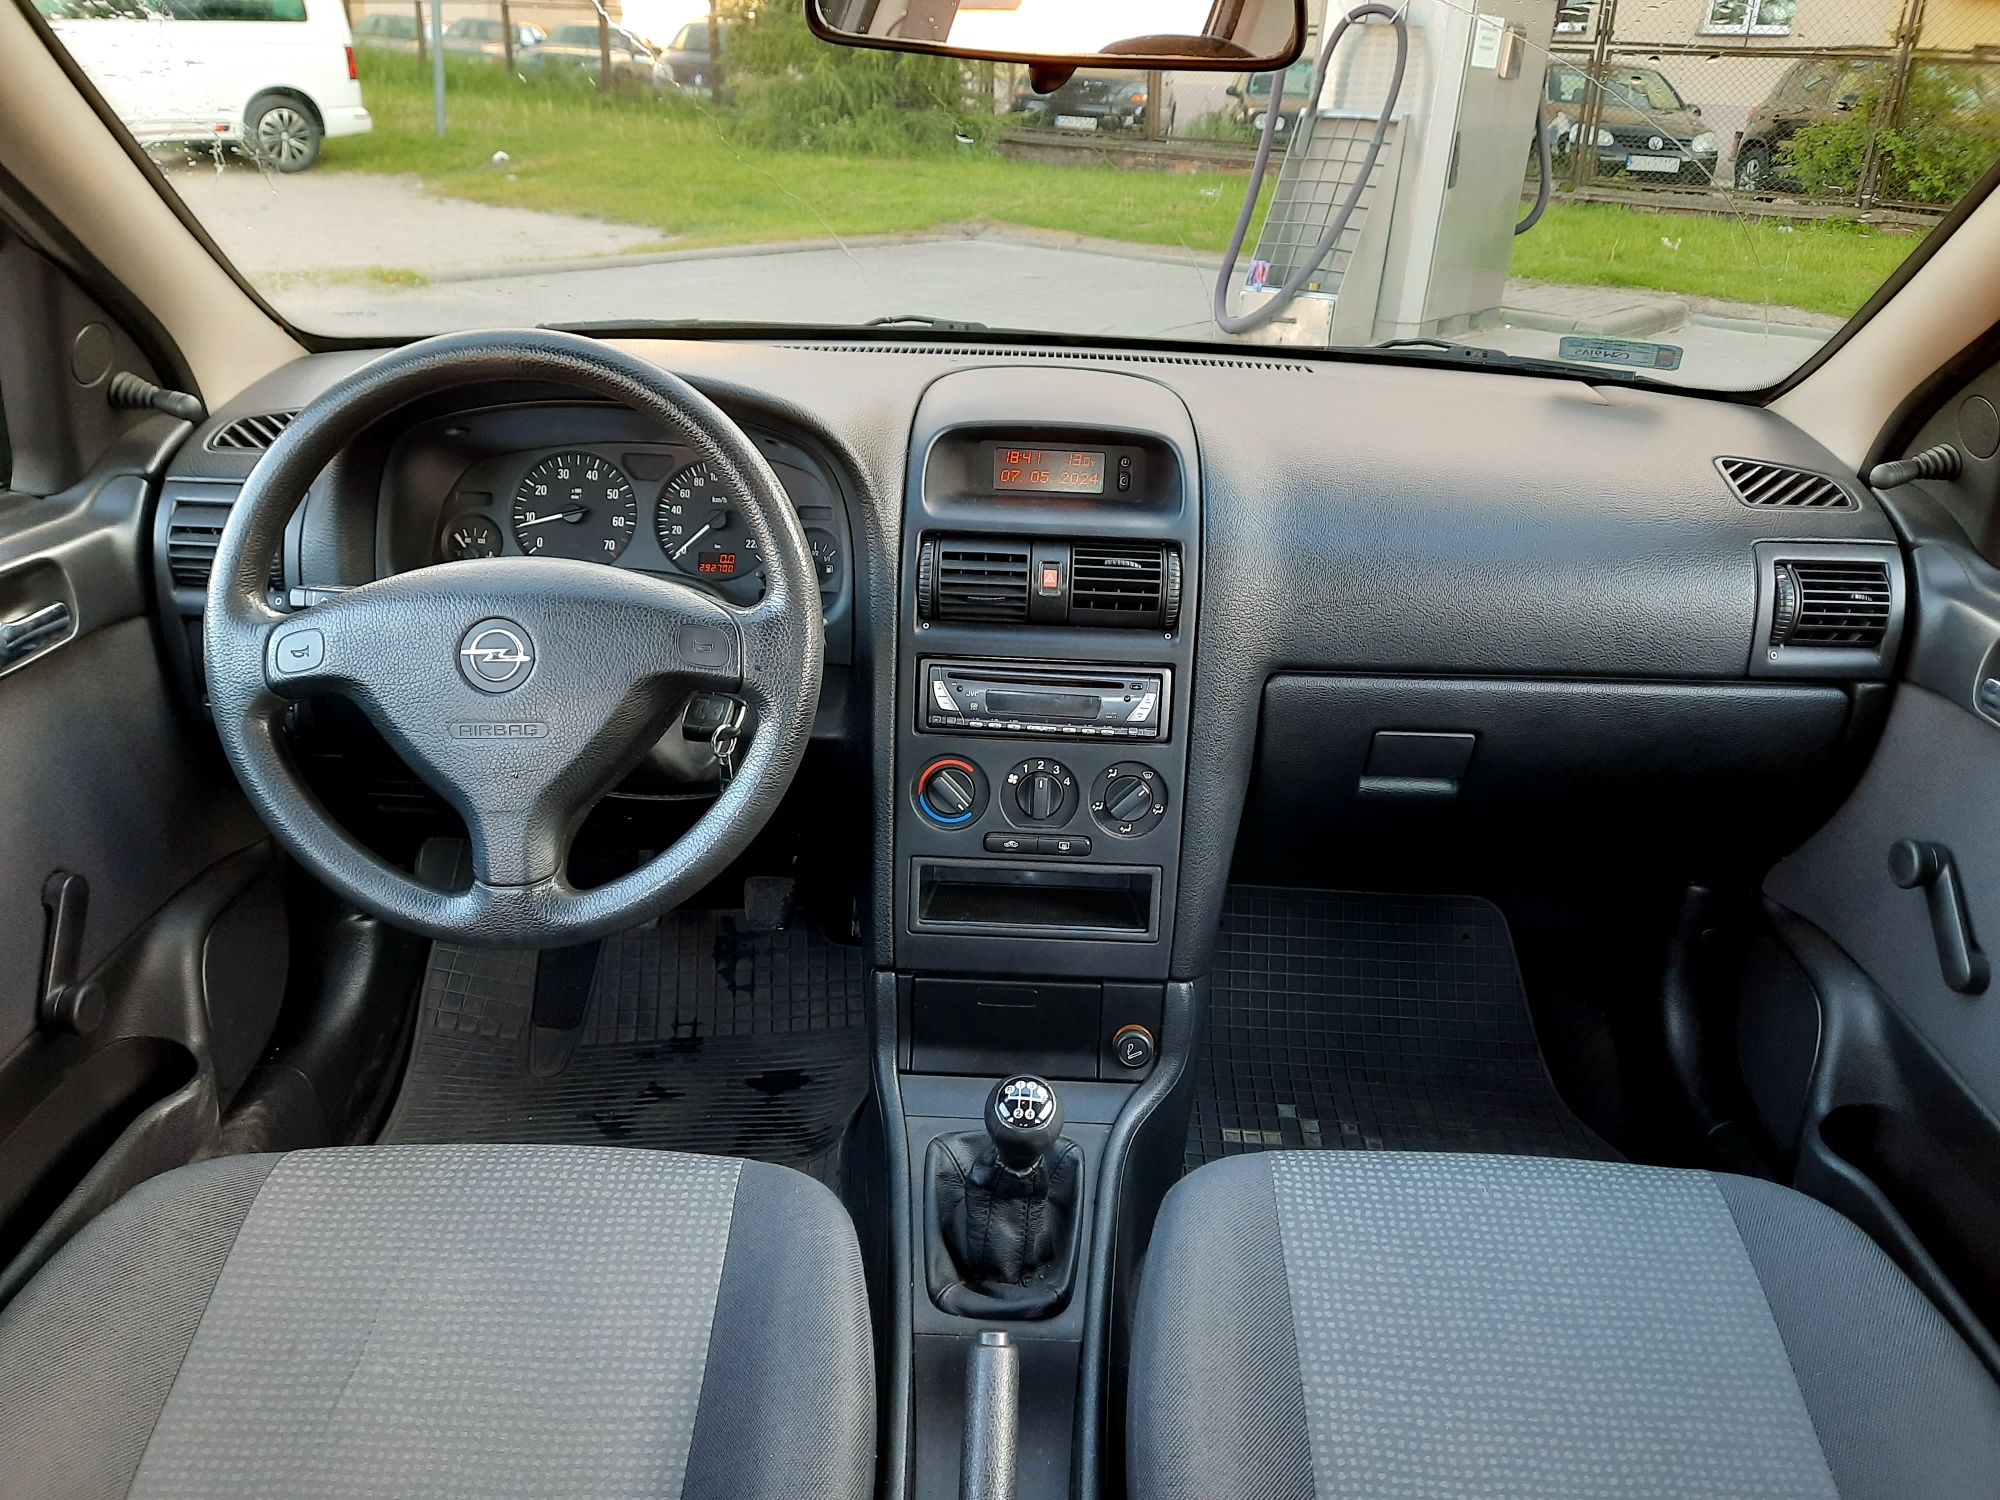 Opel Astra G 1.6 2003 ważne opłaty